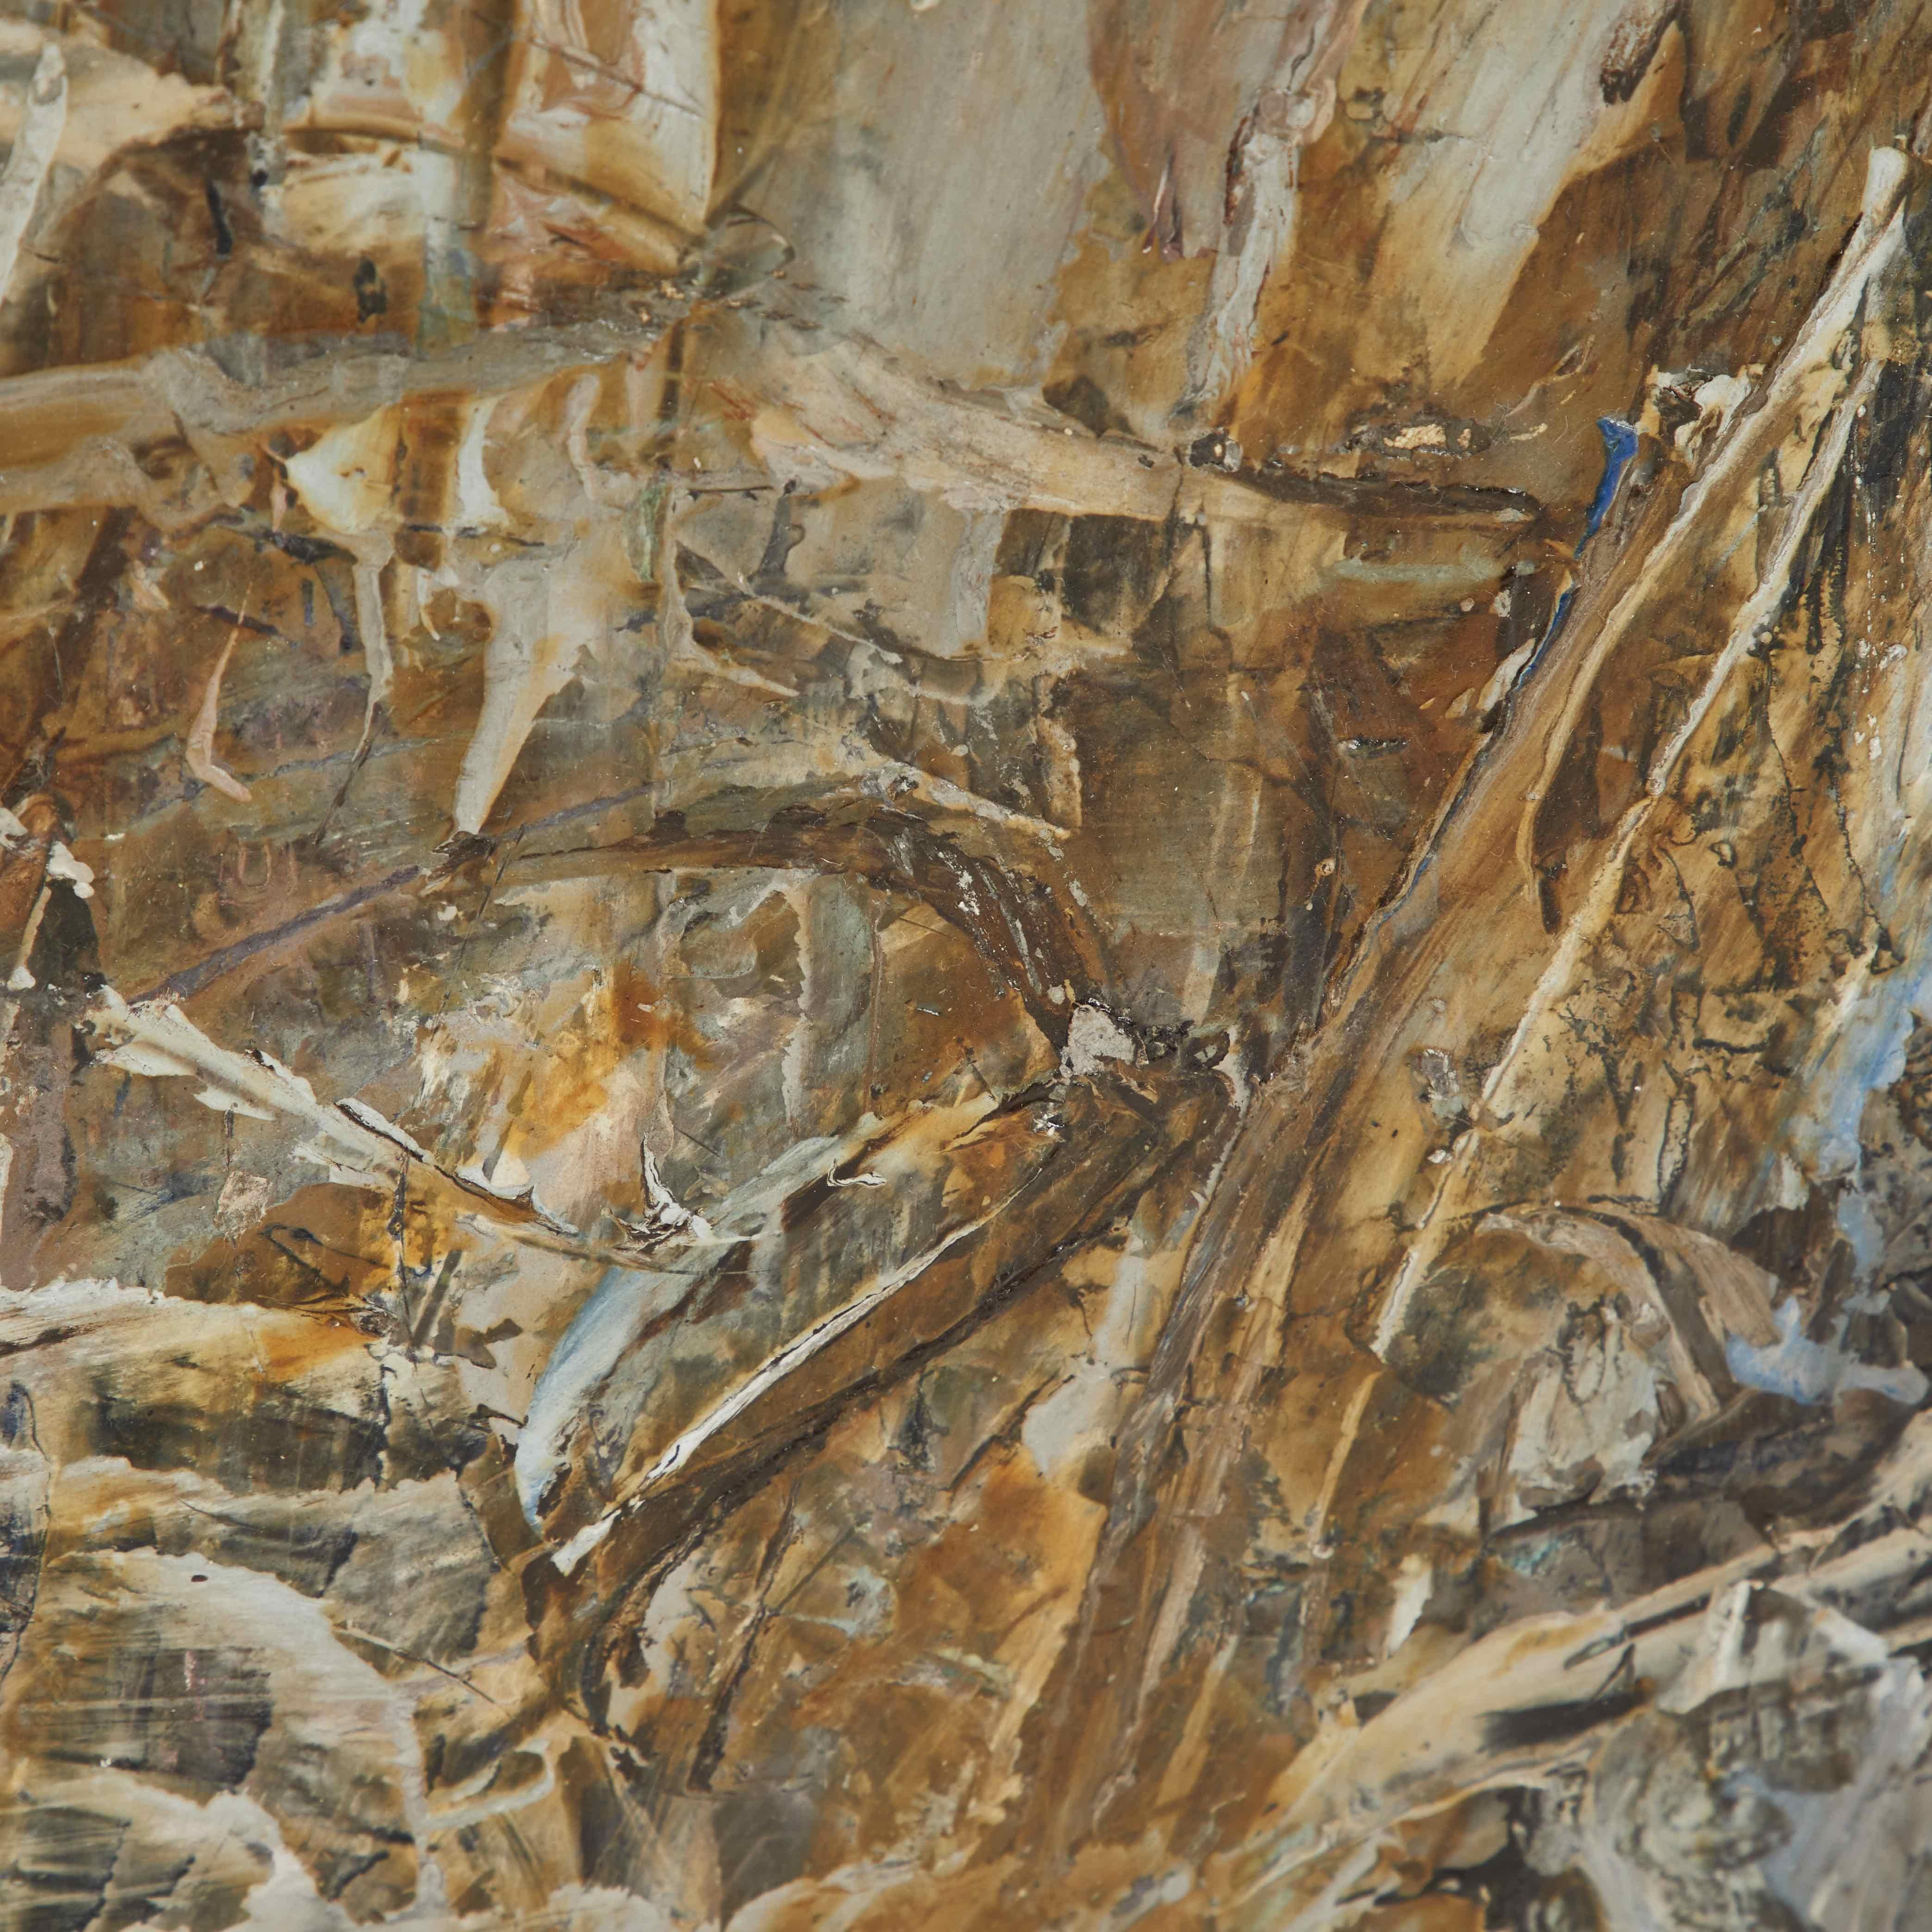 Abstraktes expressionistisches Ölgemälde von Charles Maussion aus der Mitte des Jahrhunderts. Die energiegeladene Lebendigkeit des Werks wird durch die rauchige, holzige Palette von Grau- und Ockertönen ausgeglichen. Das Gemälde ist dynamisch und